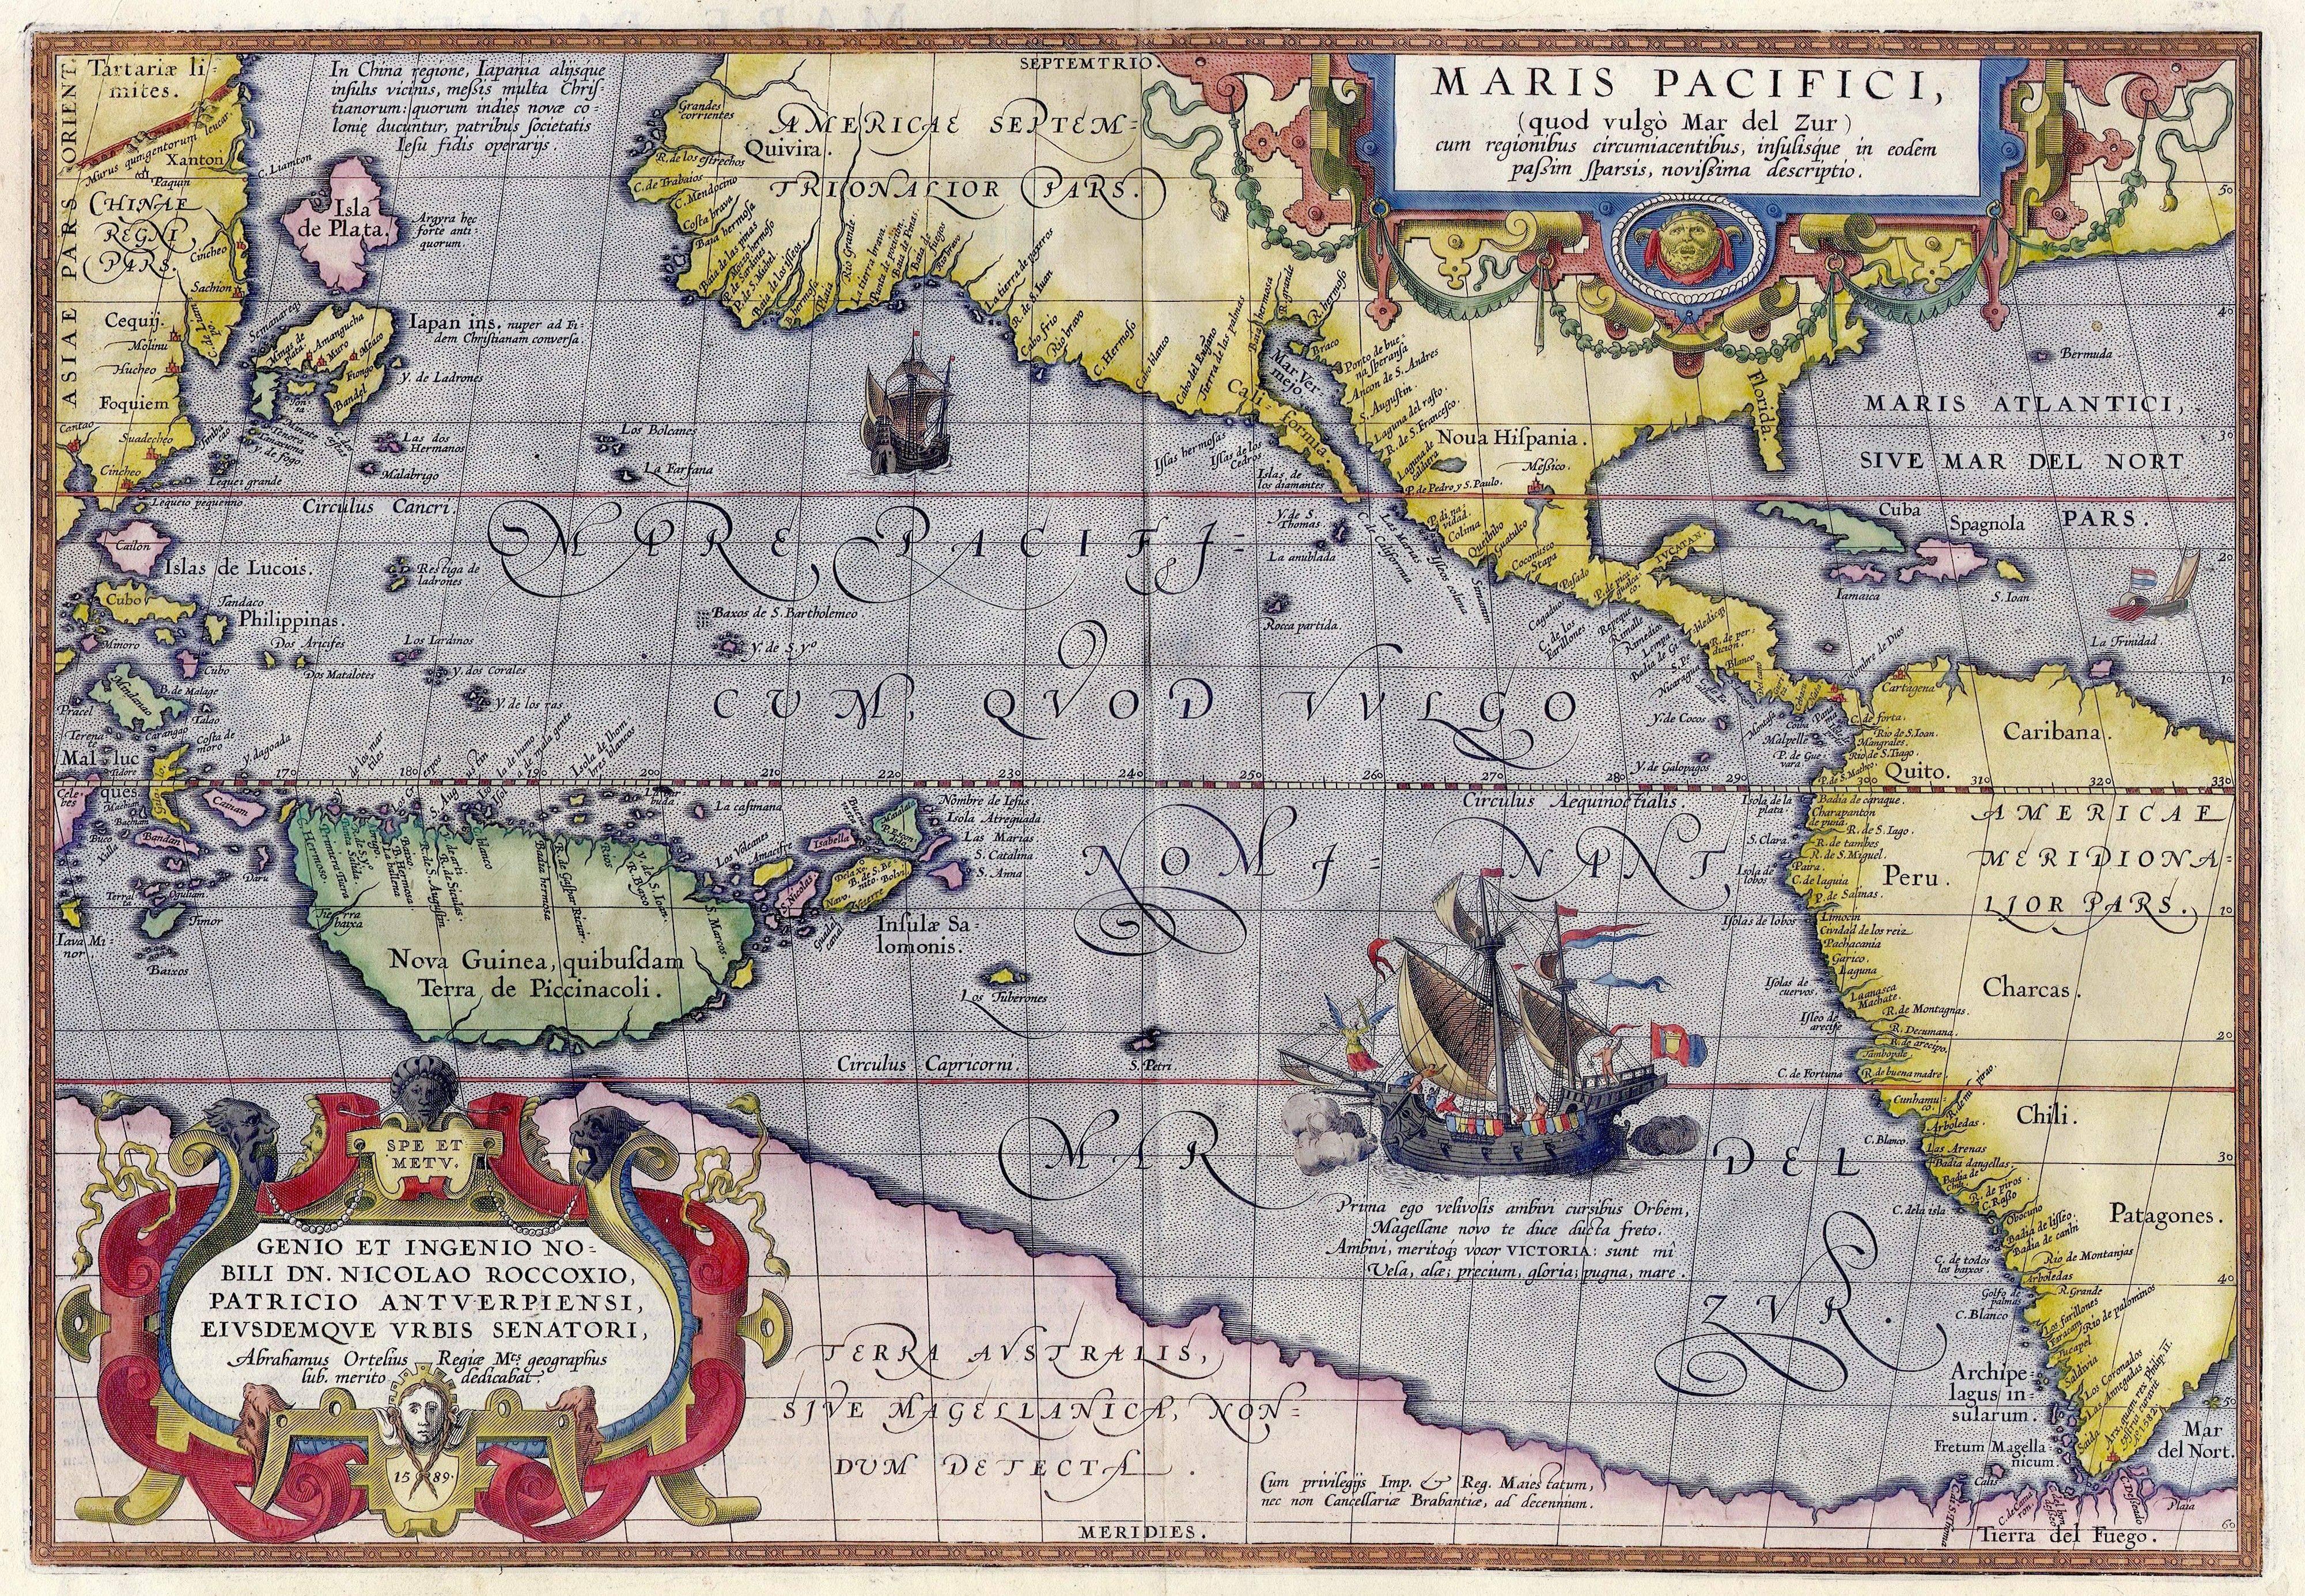 Carte de la "Maris Pacifici" d'Abraham Ortelius publiée en 1589 dans son "Theatrum Orbis Terrarum". Première représentation imprimée d'une carte du Pacifique et de l'Amérique.